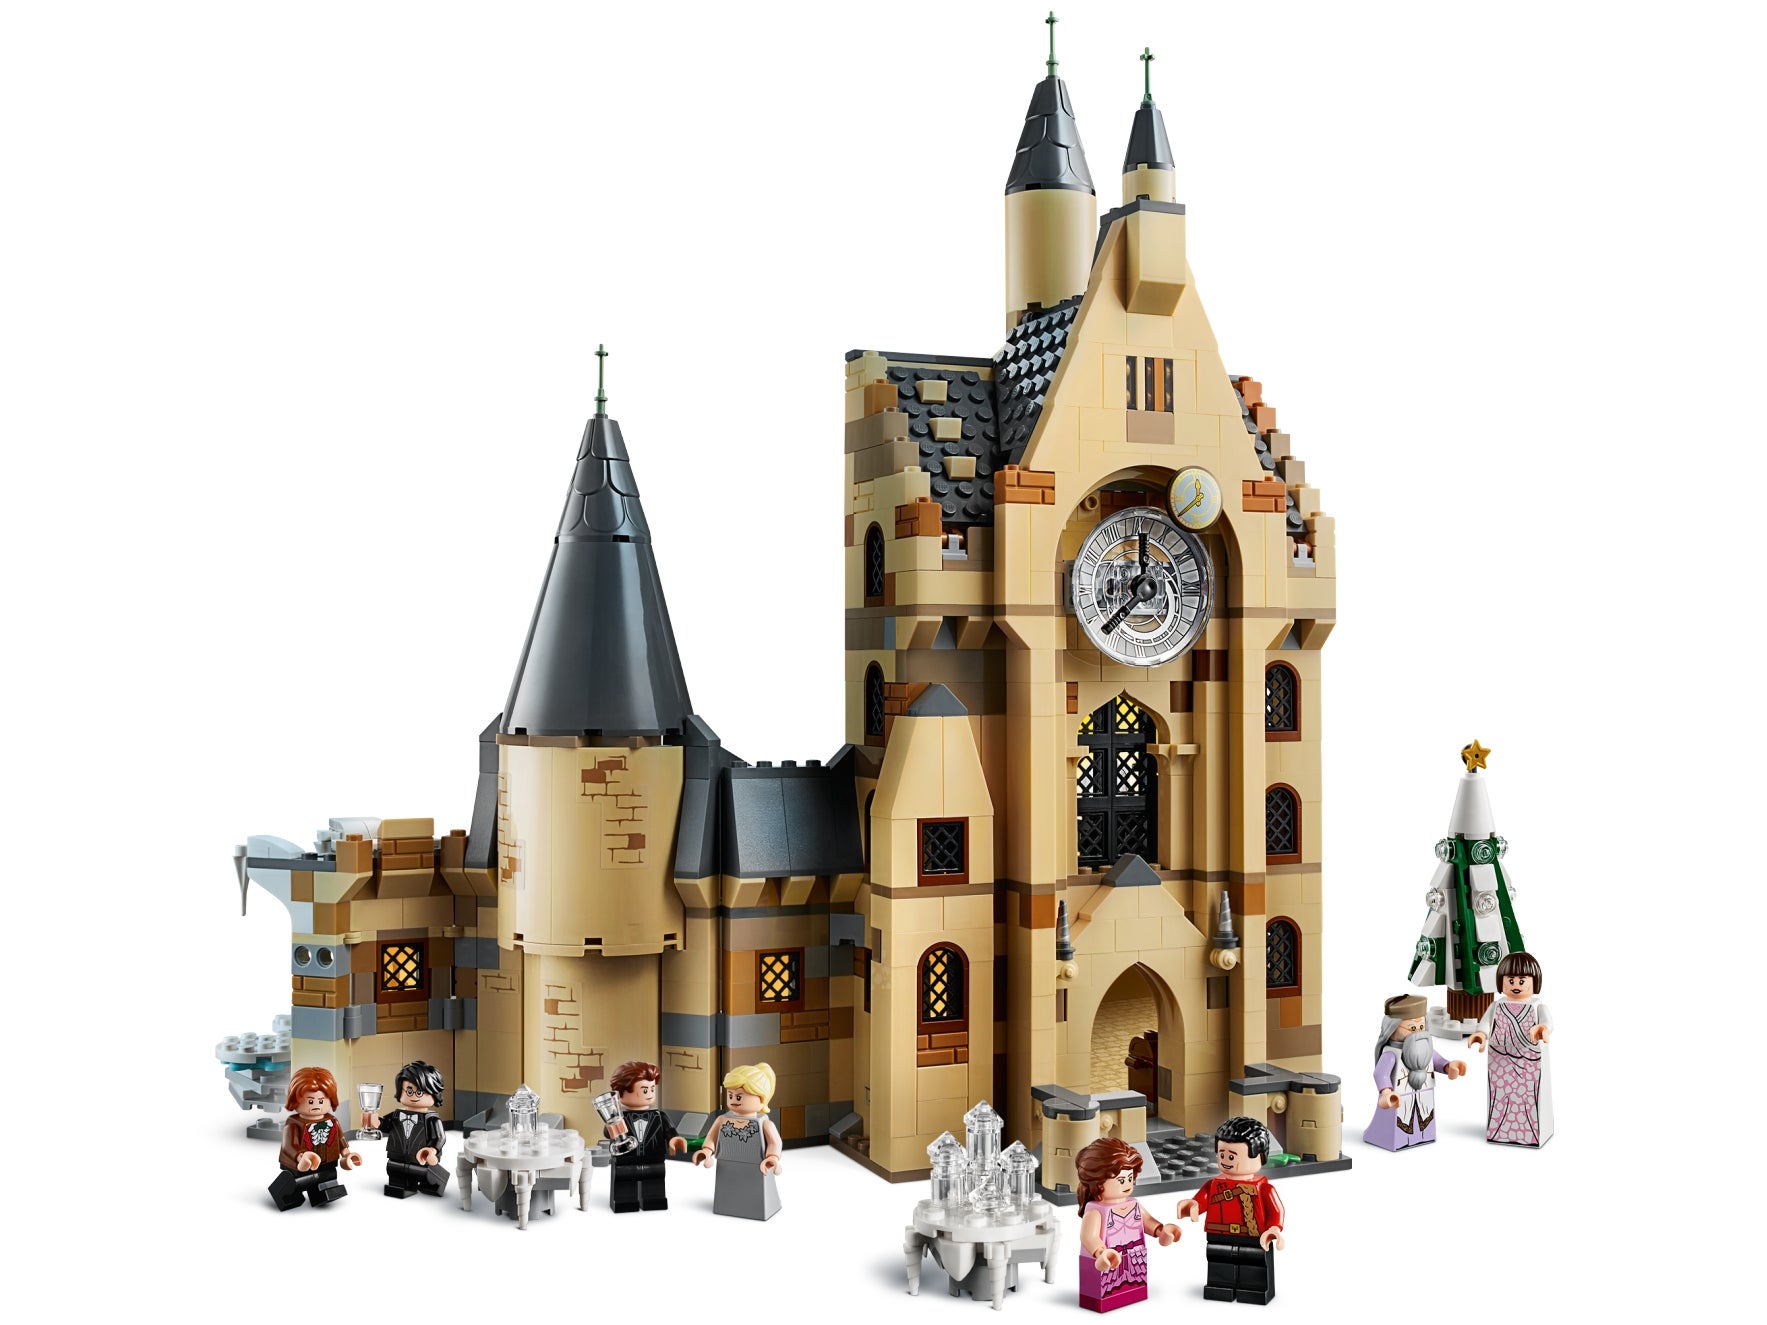 Конструктор LEGO Harry Potter «Часовая башня Хогвартса» 75948 / 922 детали